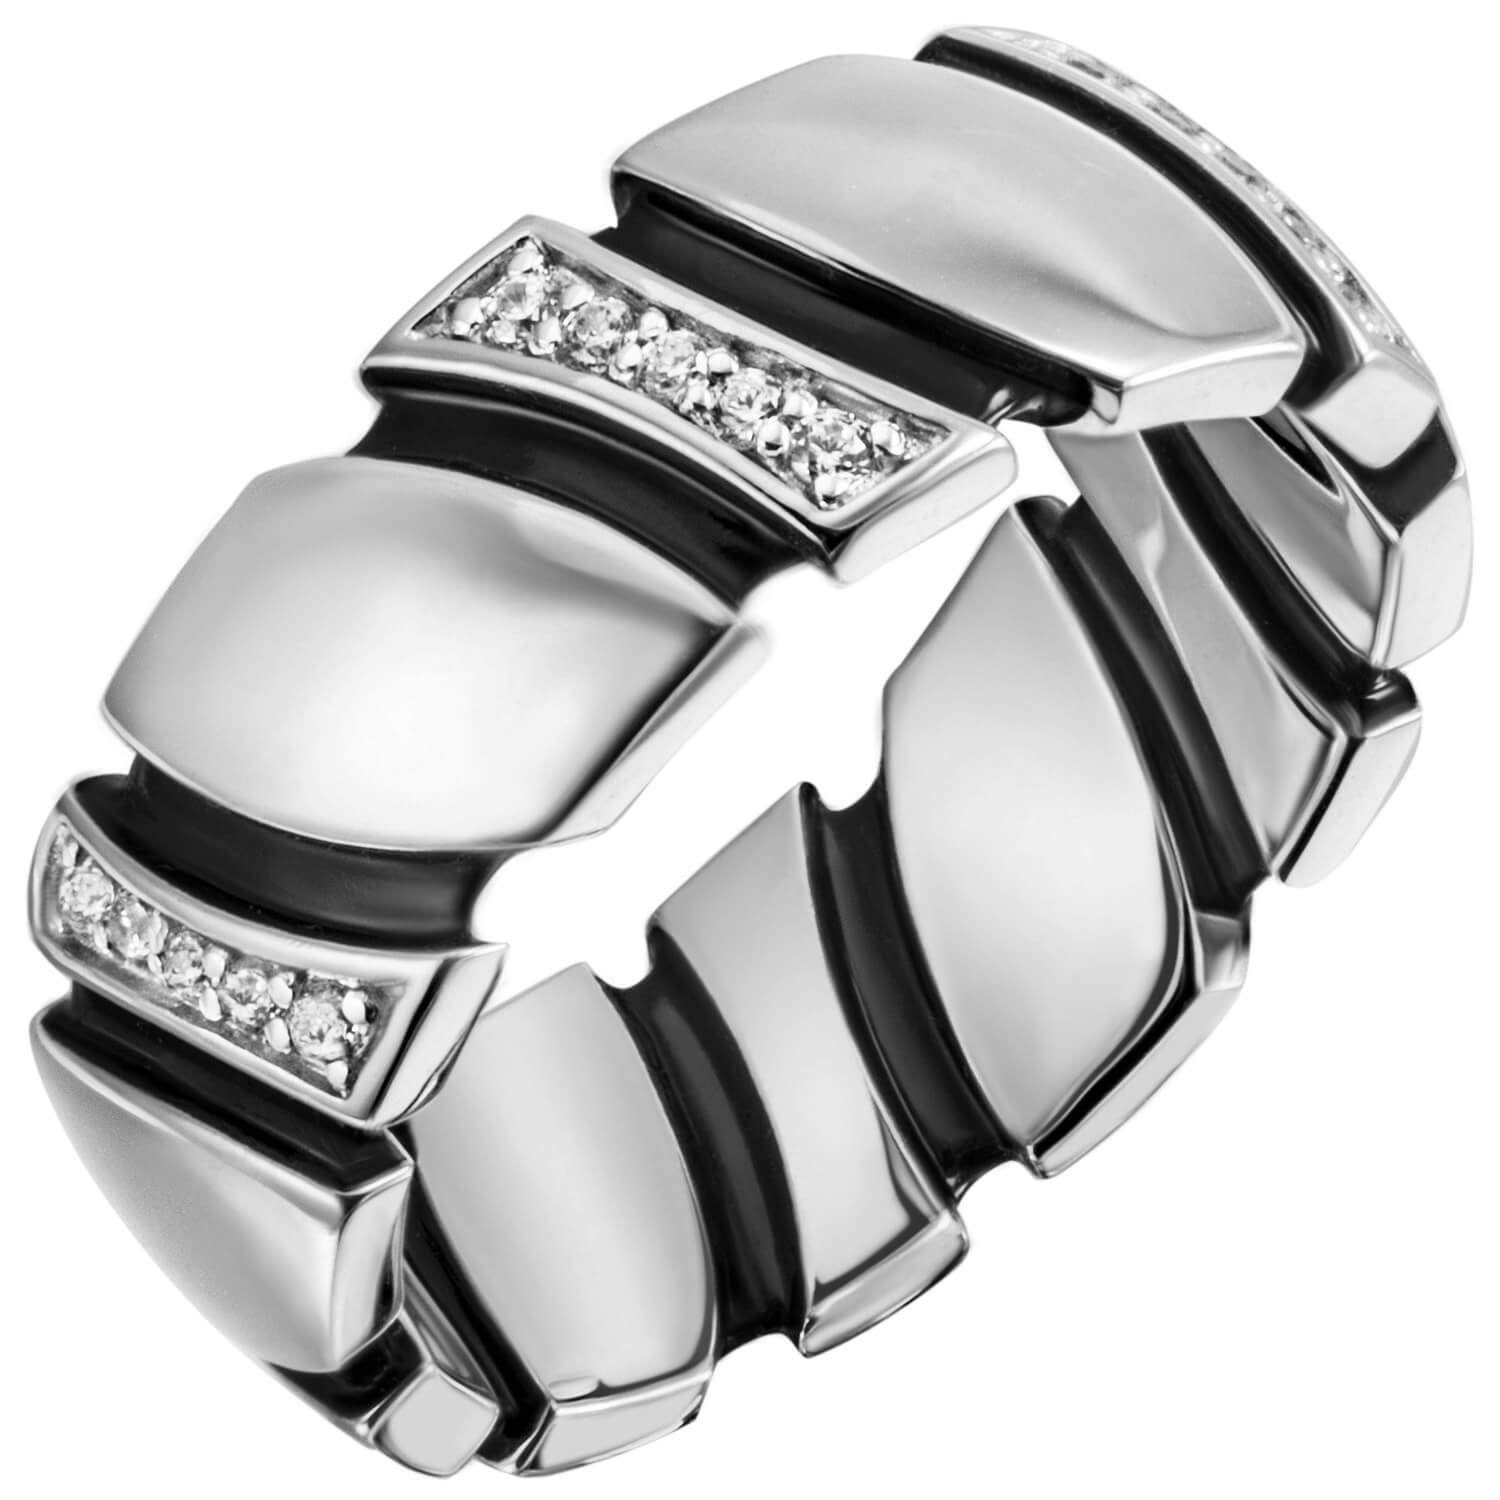 Damenring Silber Silber rhodiniert Ring Silberring Krone 6,8mm 30 Zirkonia schwarze 925 Schmuck Lackauflagen, 925